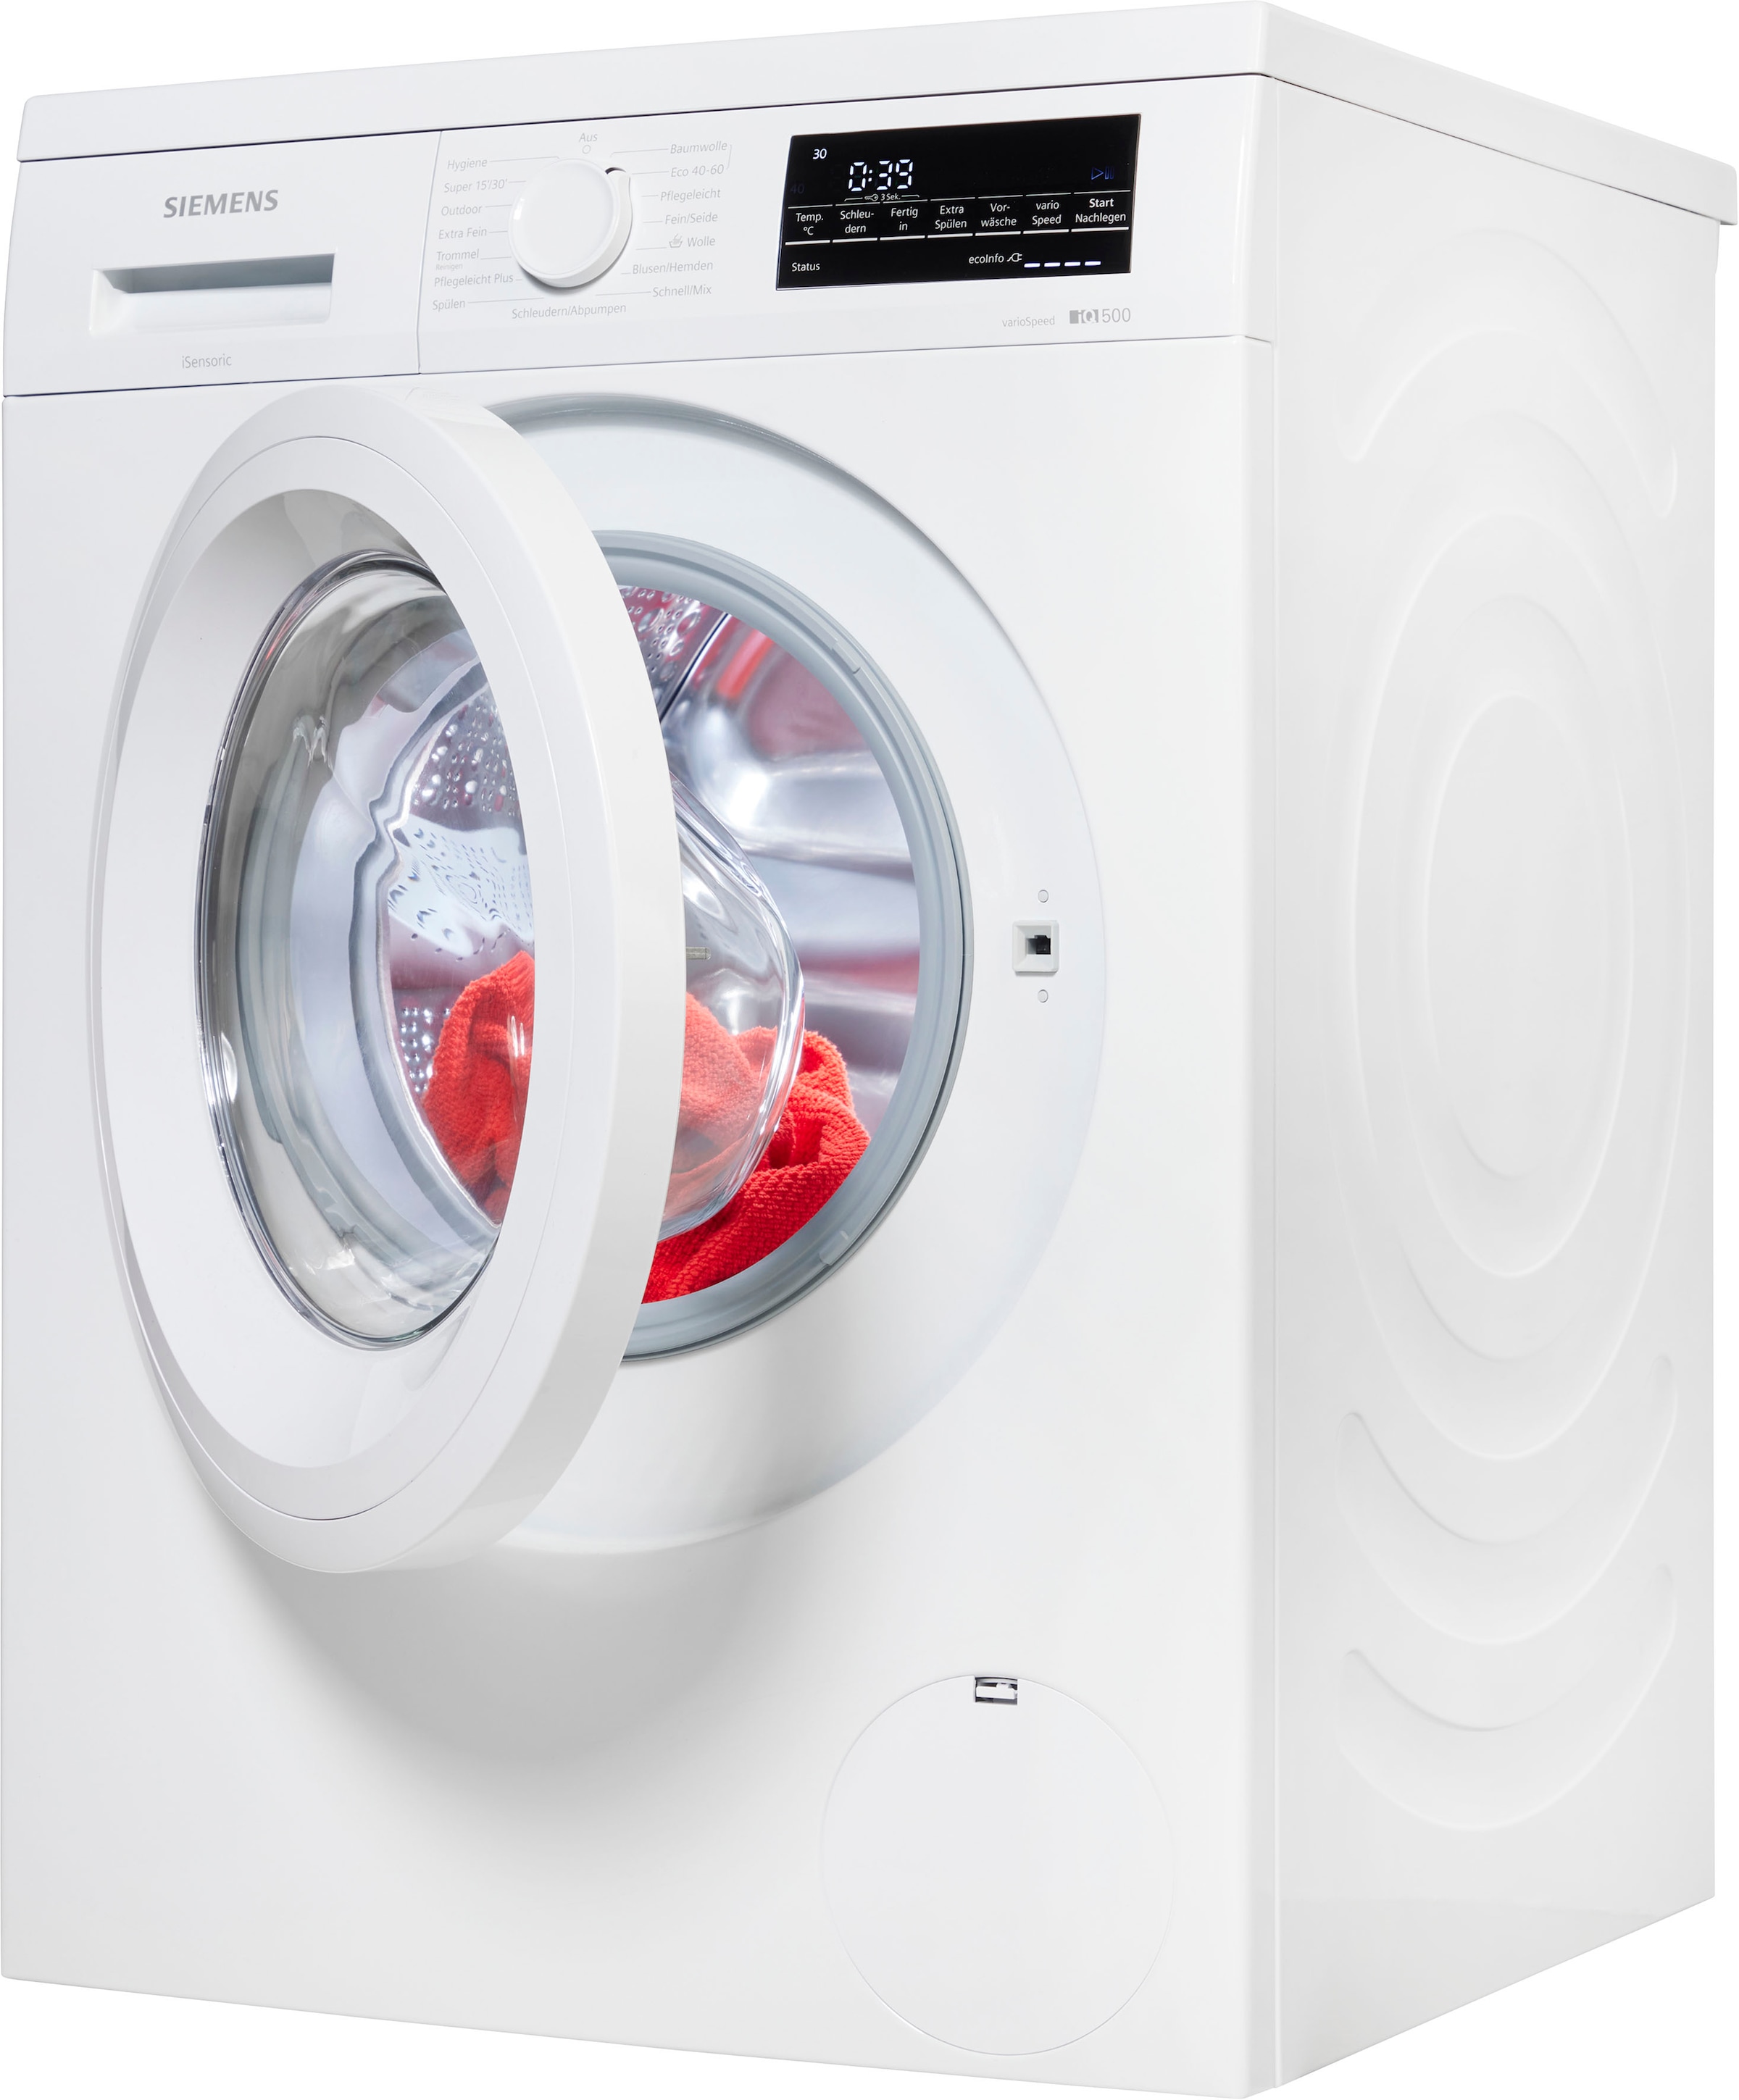 SIEMENS Waschmaschine »WU14UT21«, OTTO 1400 WU14UT21, kaufen bei kg, 9 U/min